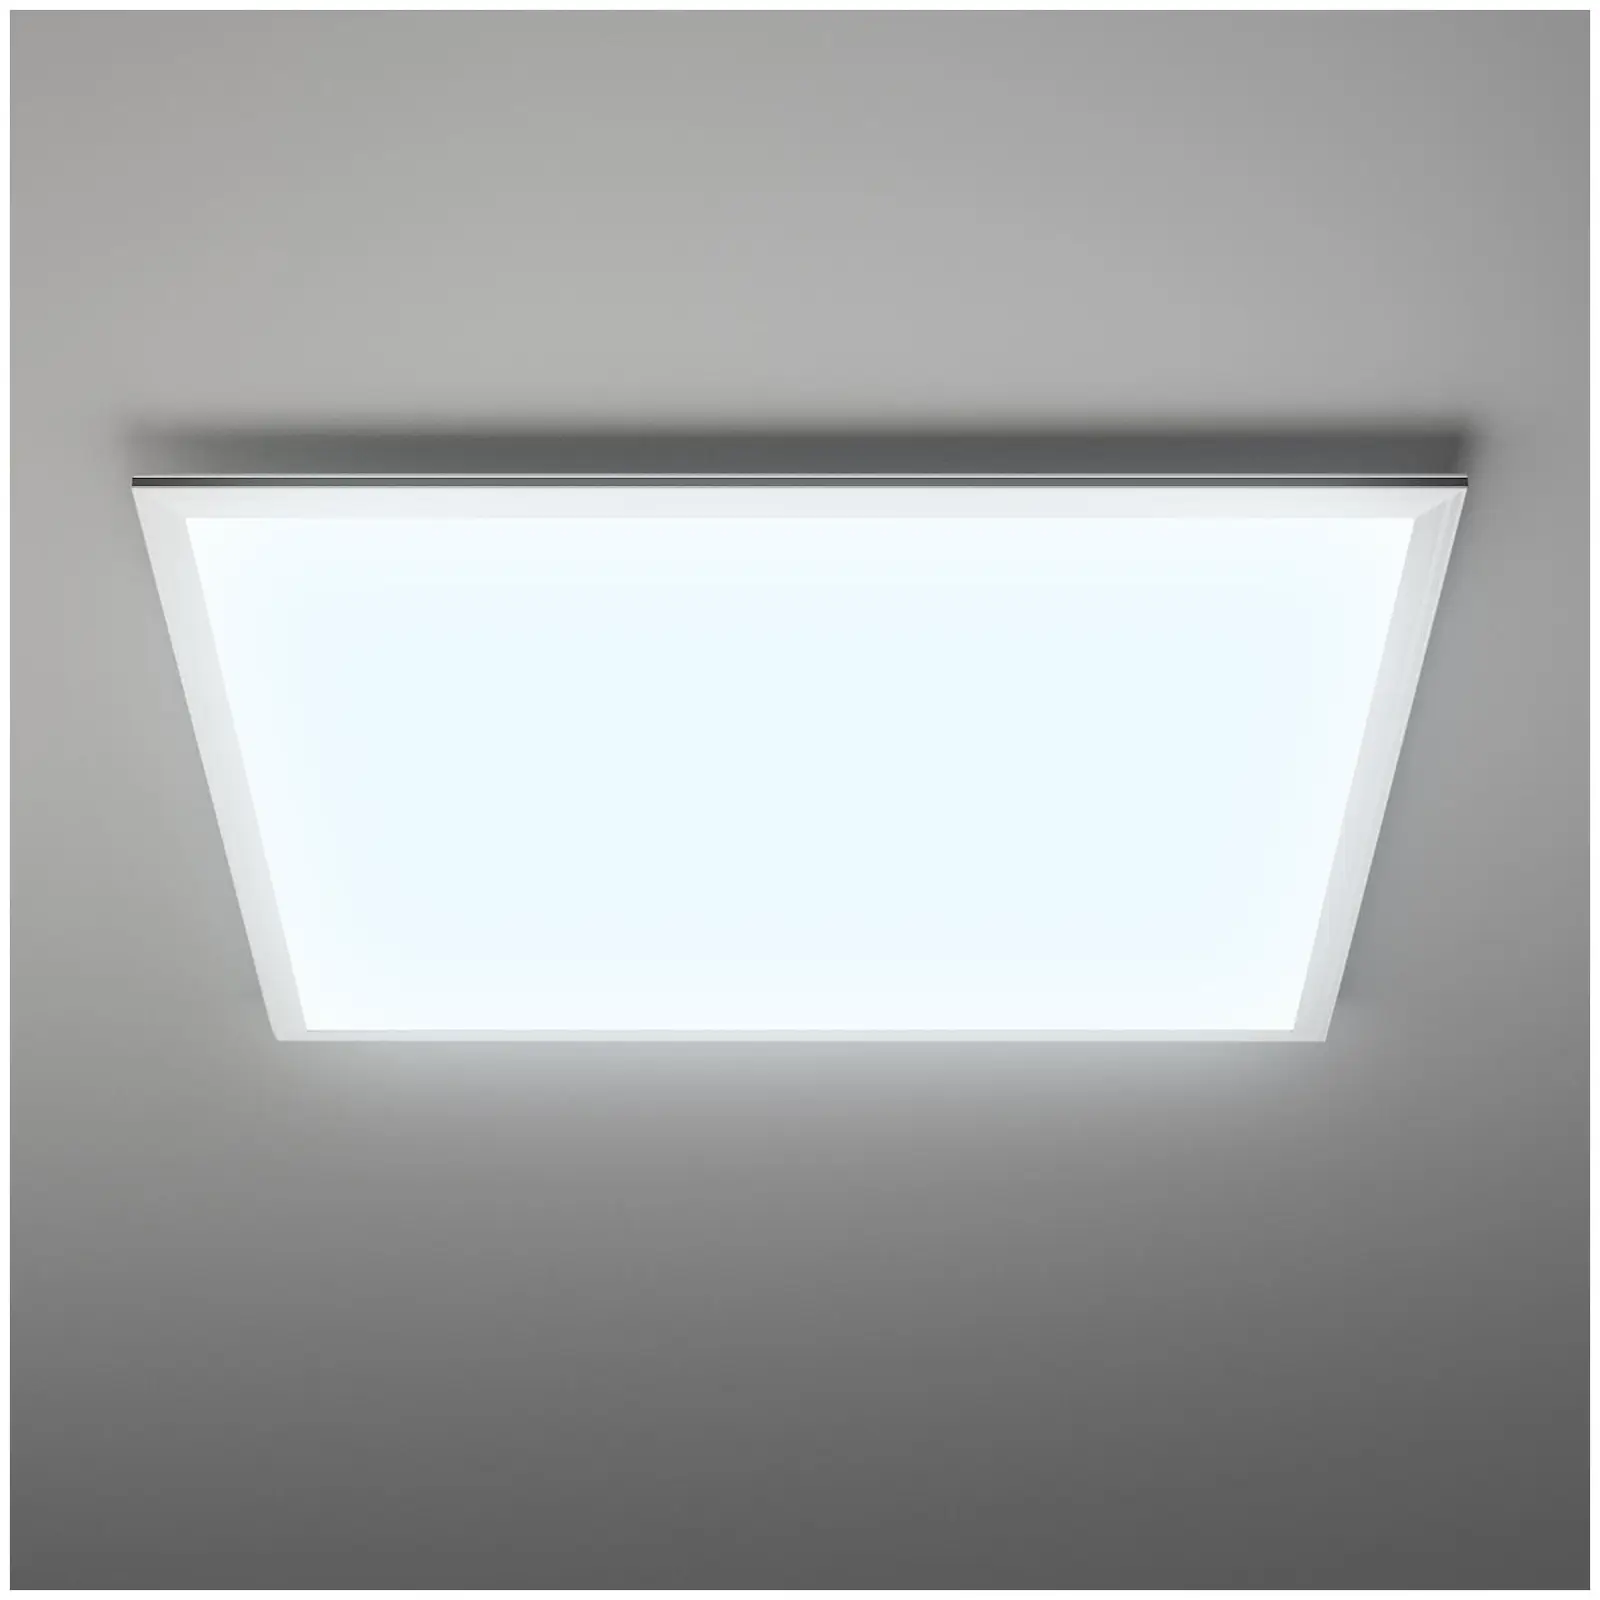 LED-panel - 62 x 62 cm - 40 W - 3,800 lumen - 6,000 K (kald hvit)